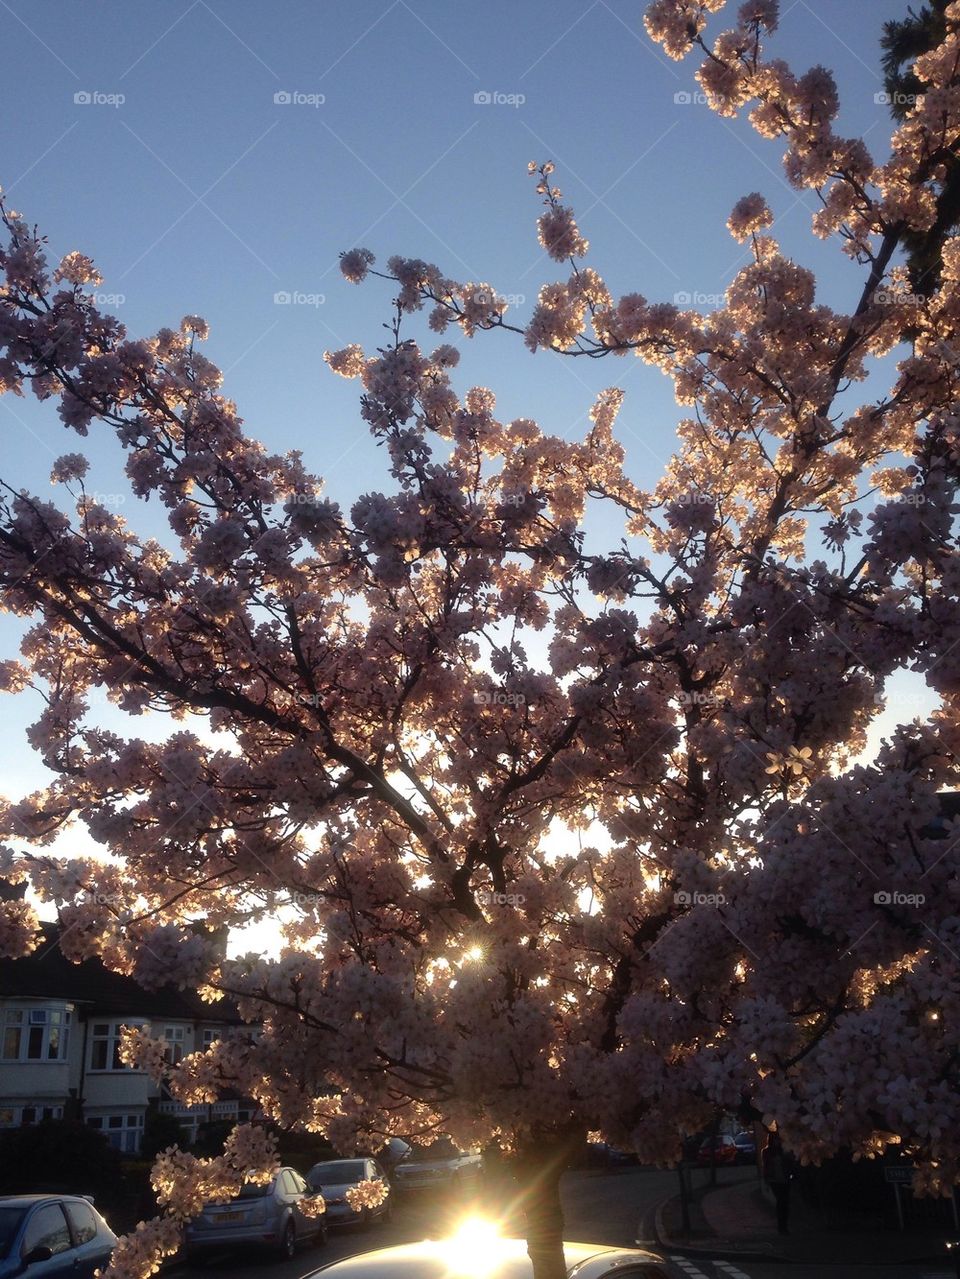 Blossom rays